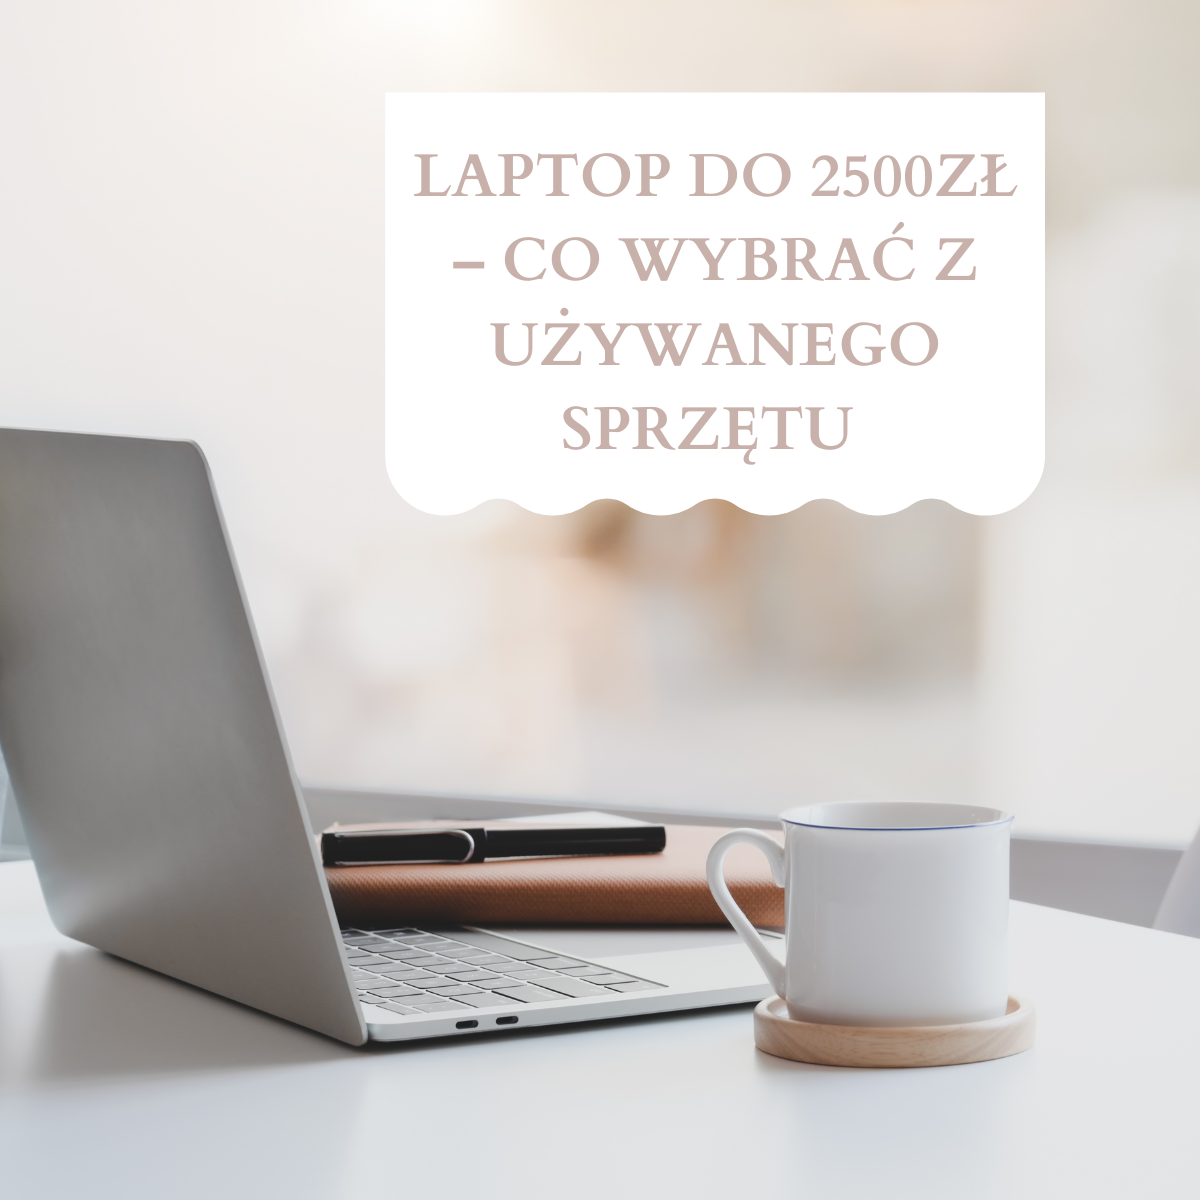 Laptop do 2500 zł – Co Wybrać zużywanego sprzętu w Sklepie AG.pl? Maj - Czerwiec